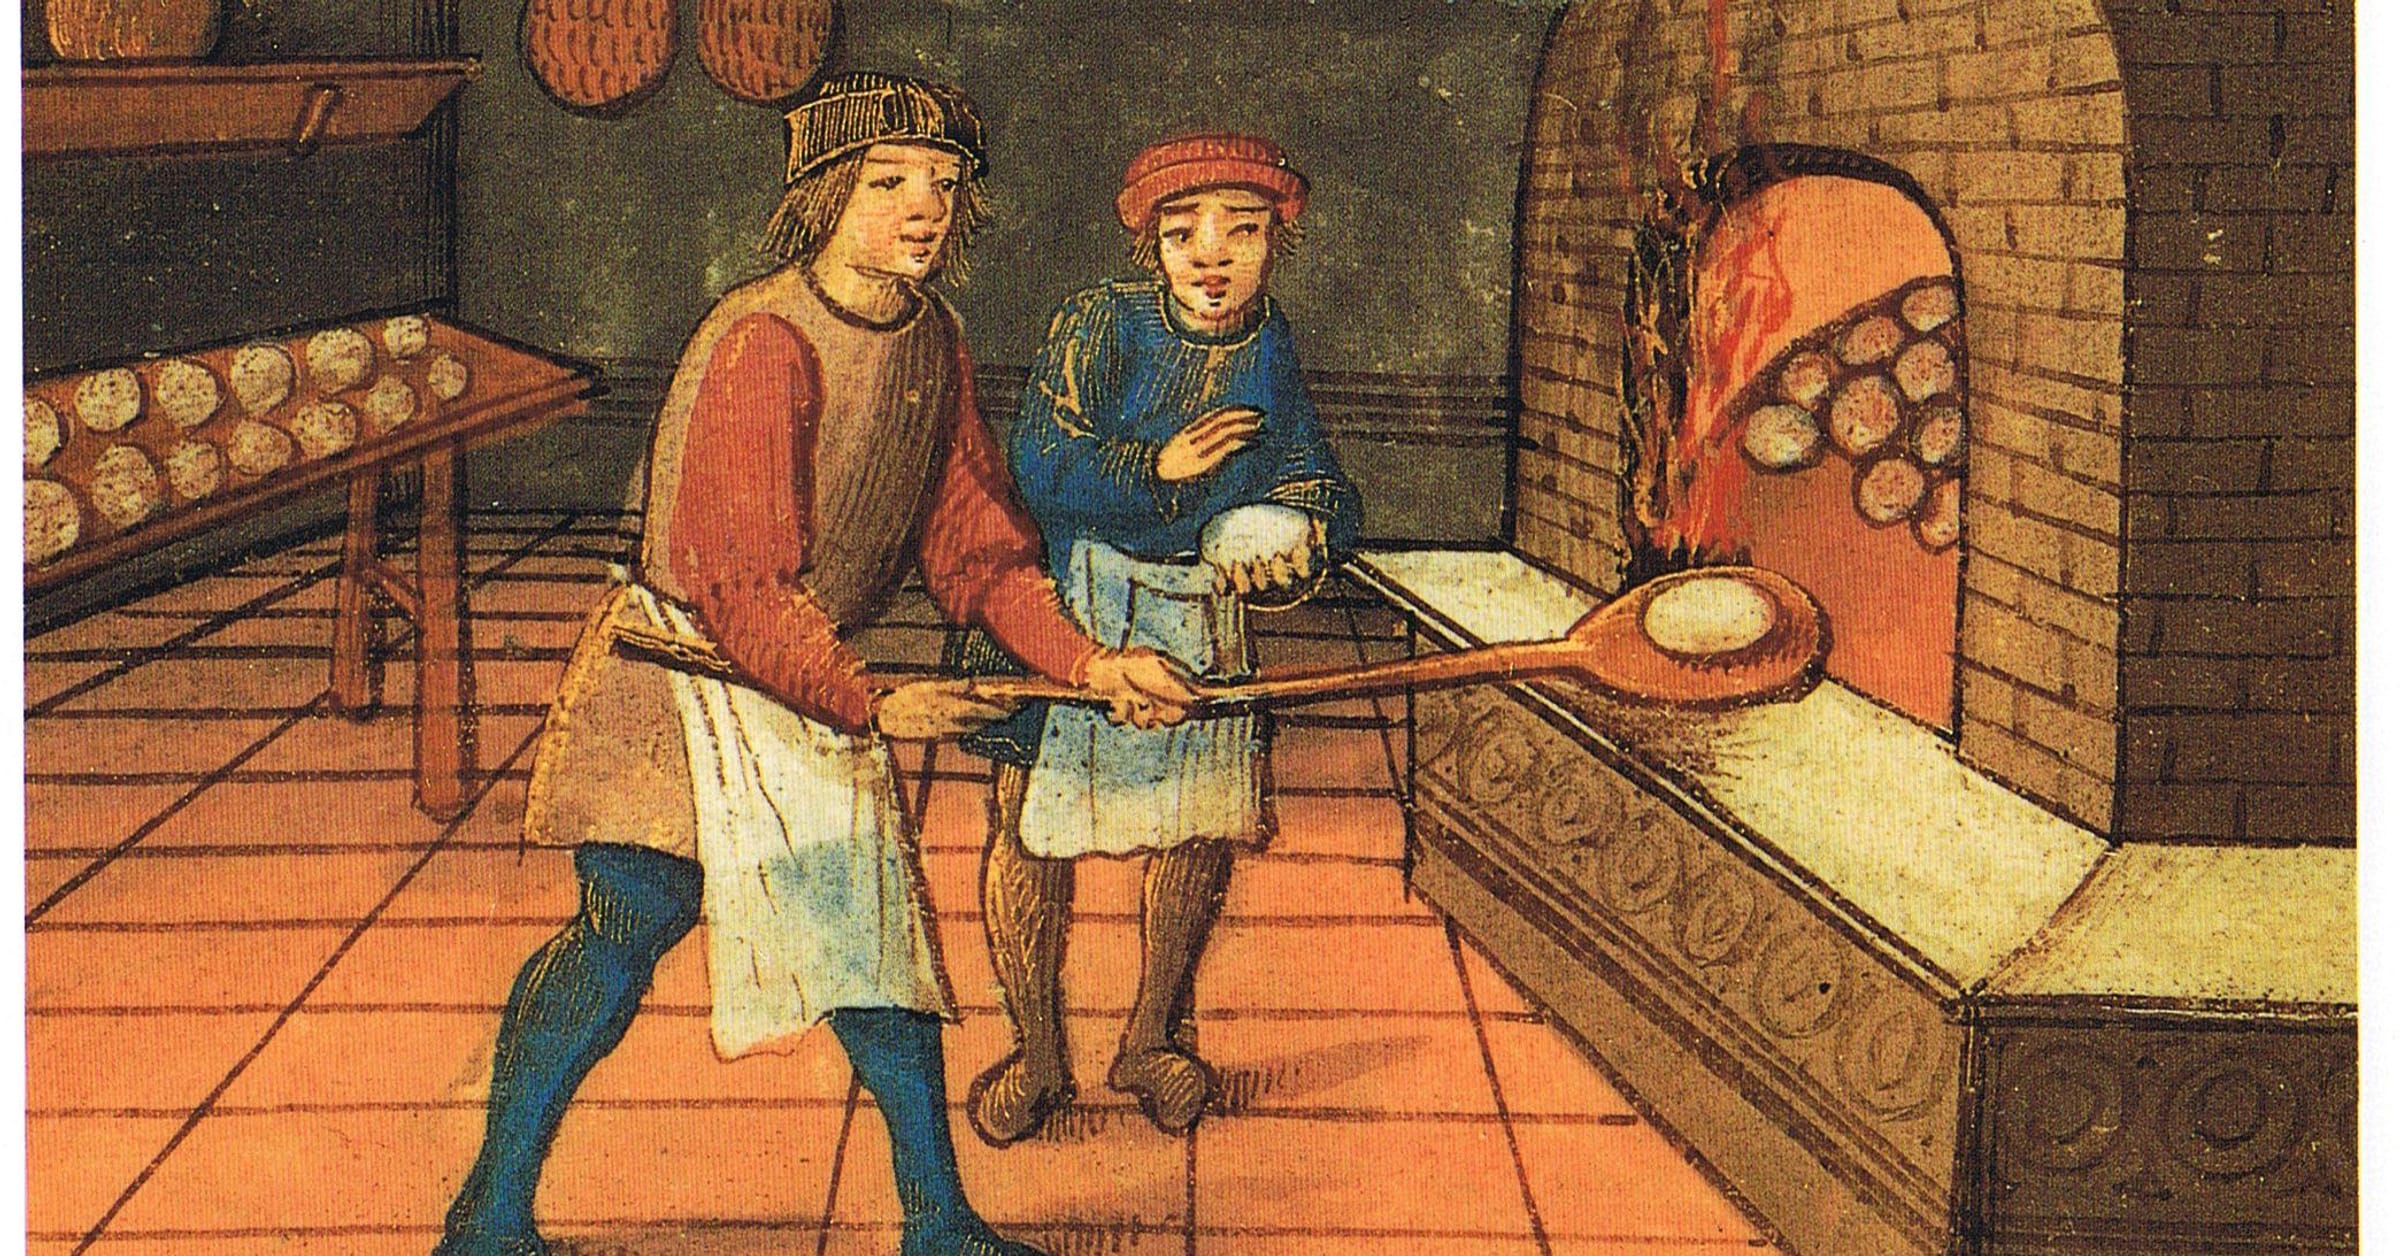 medieval food